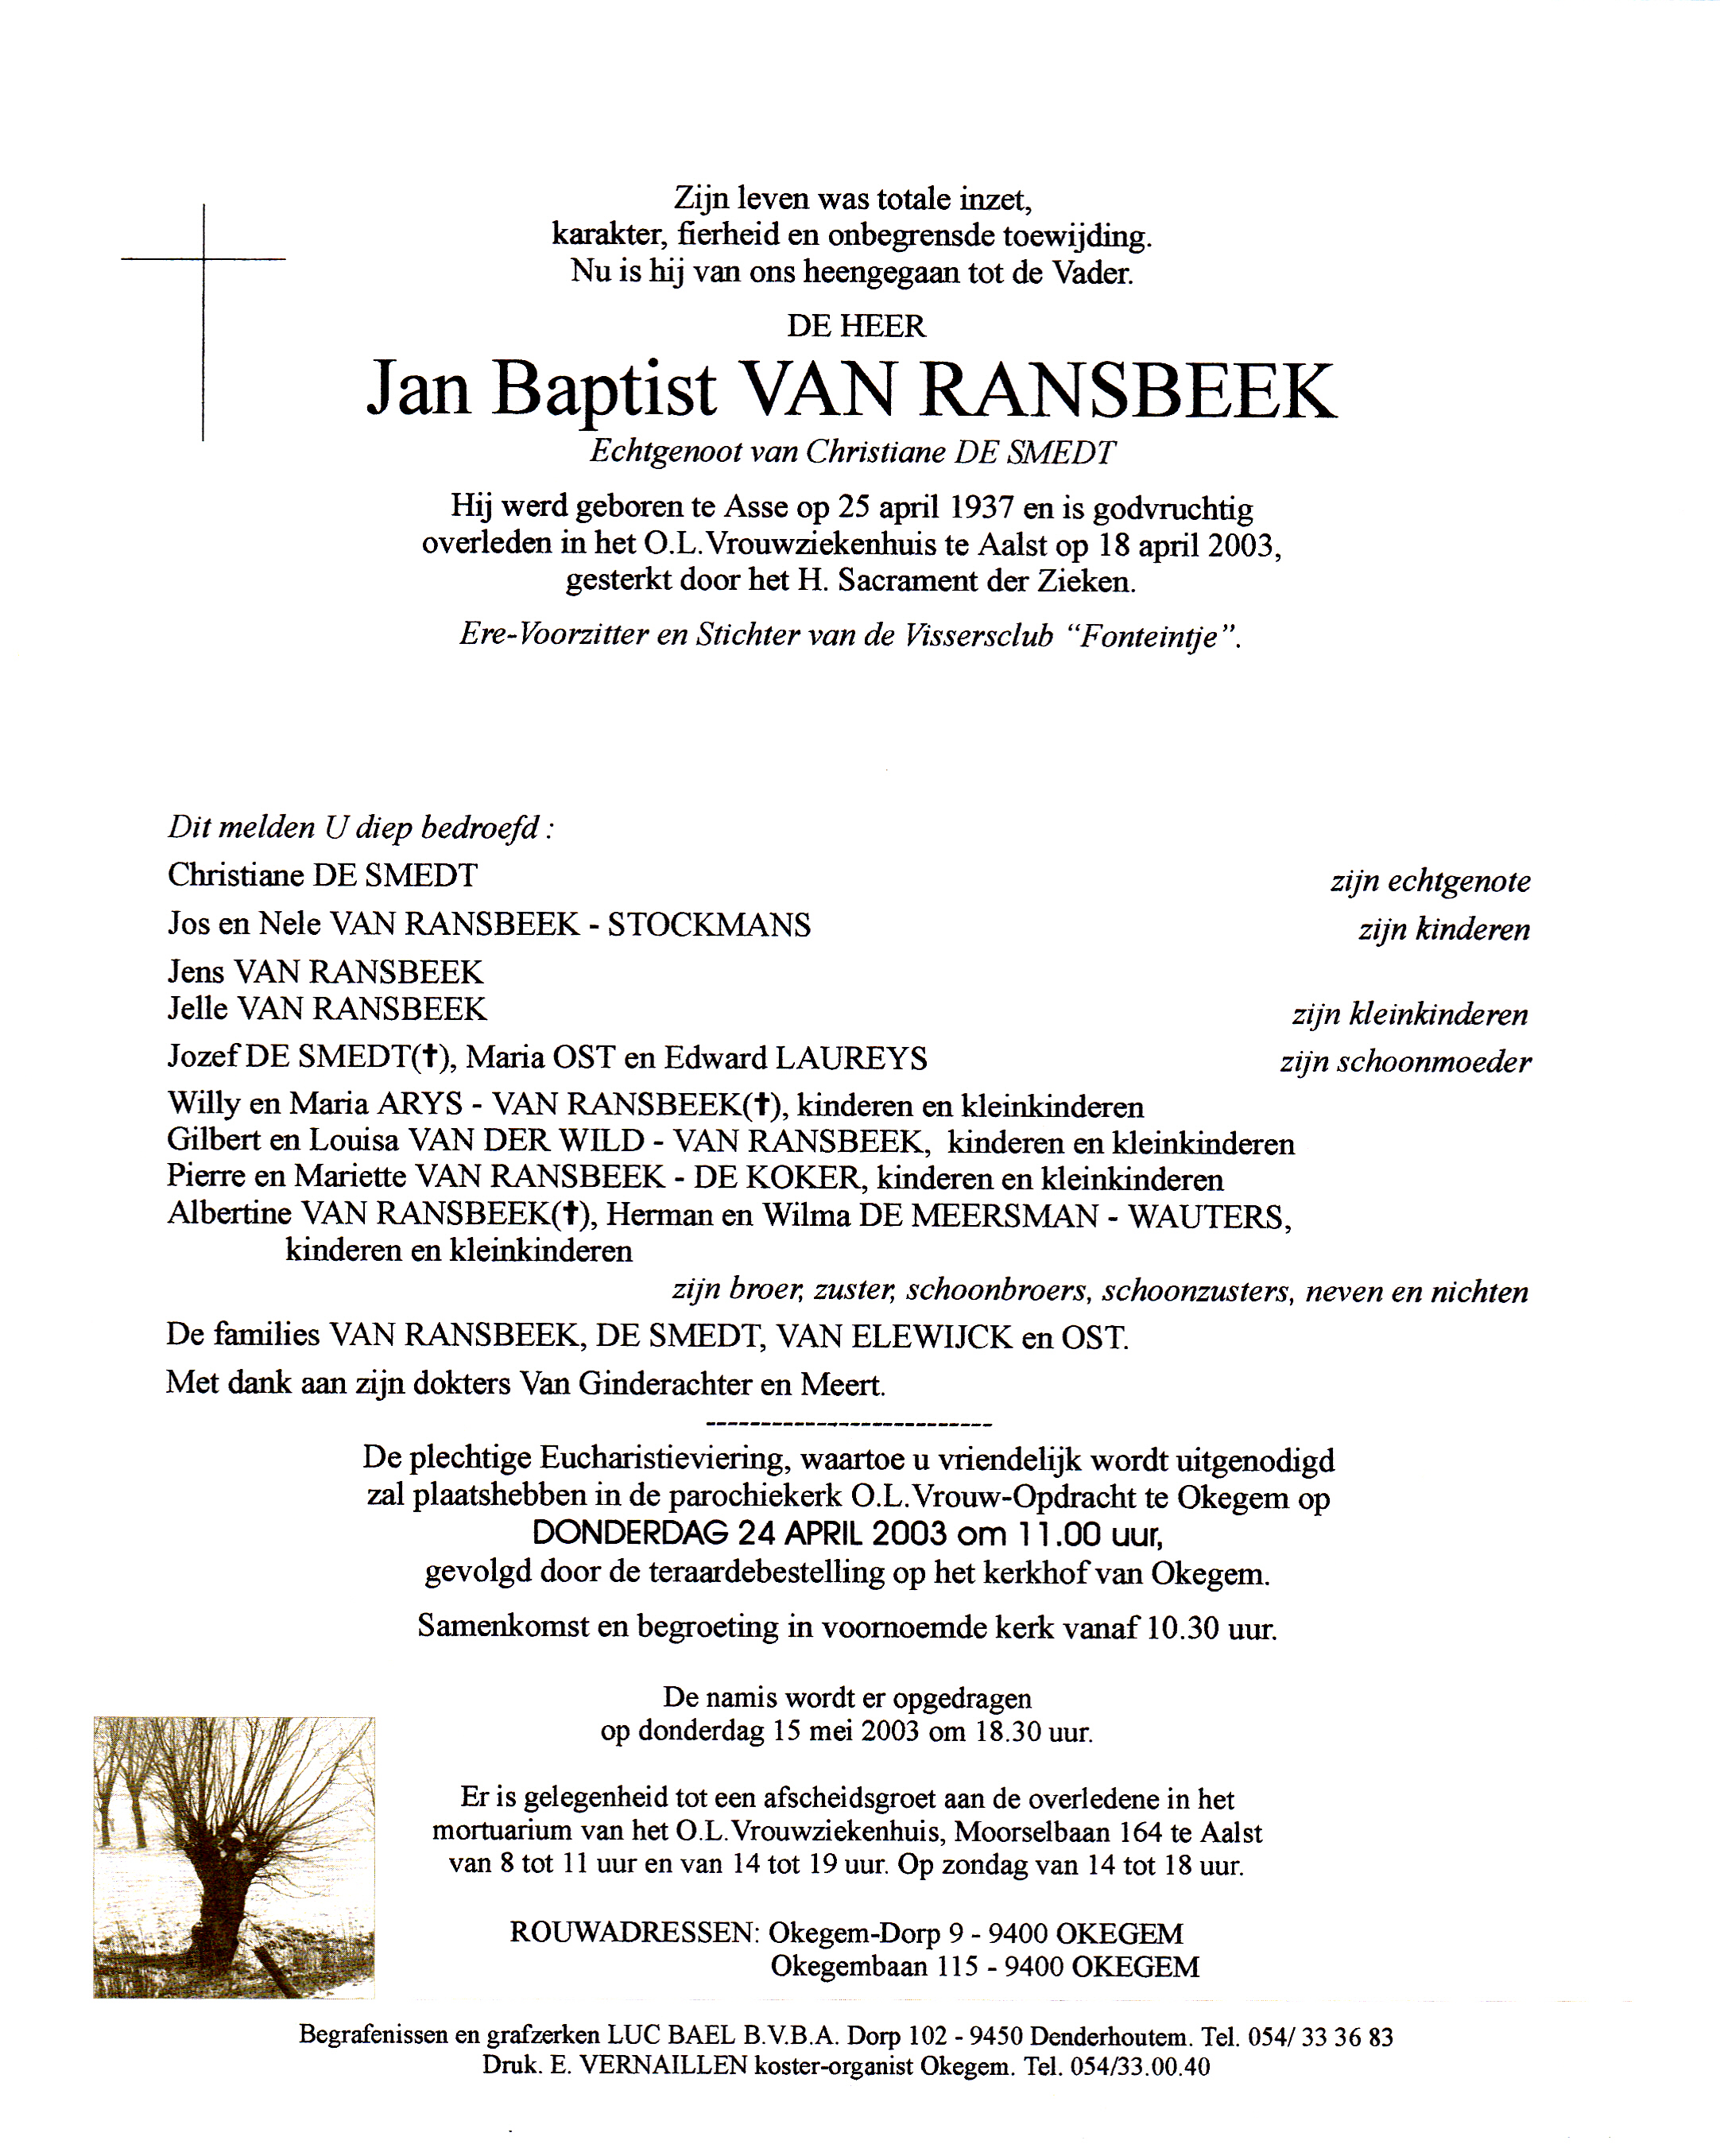 Van Ransbeek Jean Baptist  